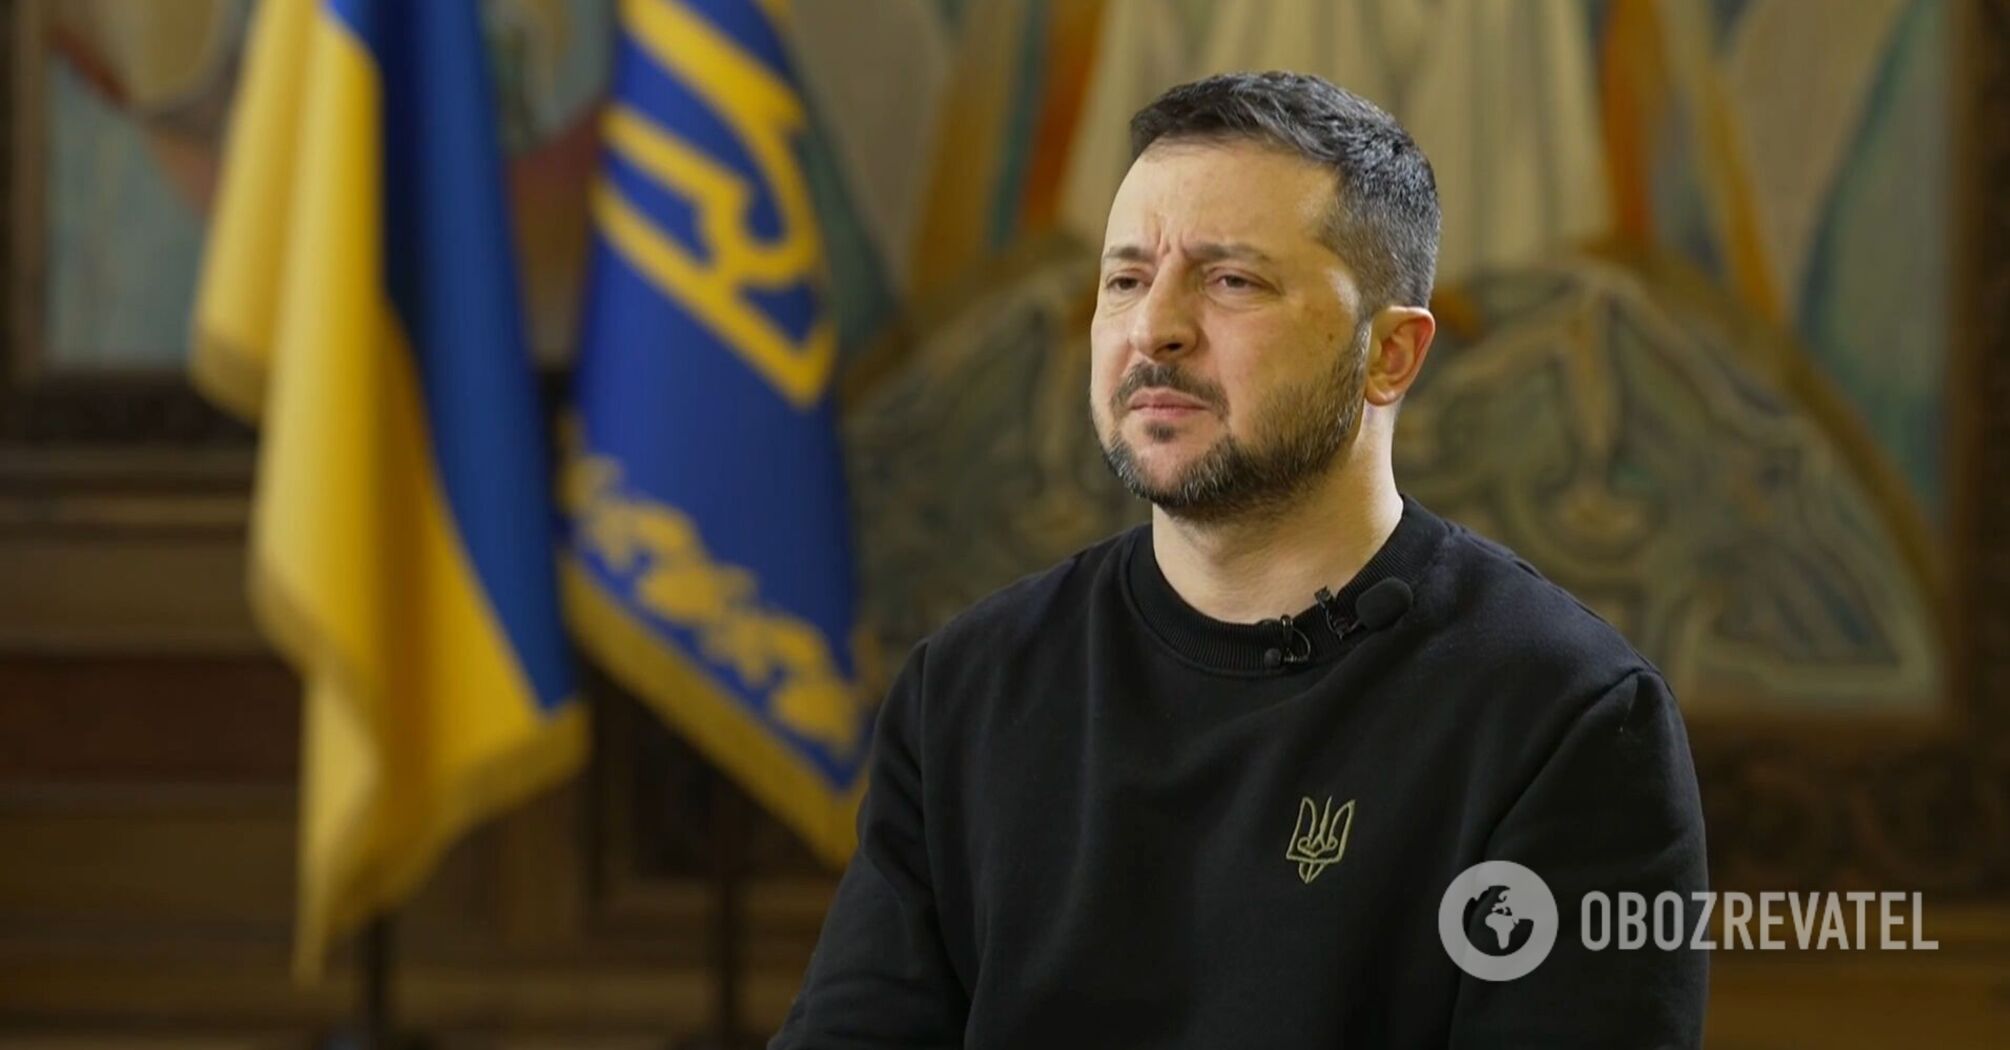 Zełenski: Stosunki między Ukrainą a Wielką Brytanią nie zależą od tego, kto jest u władzy